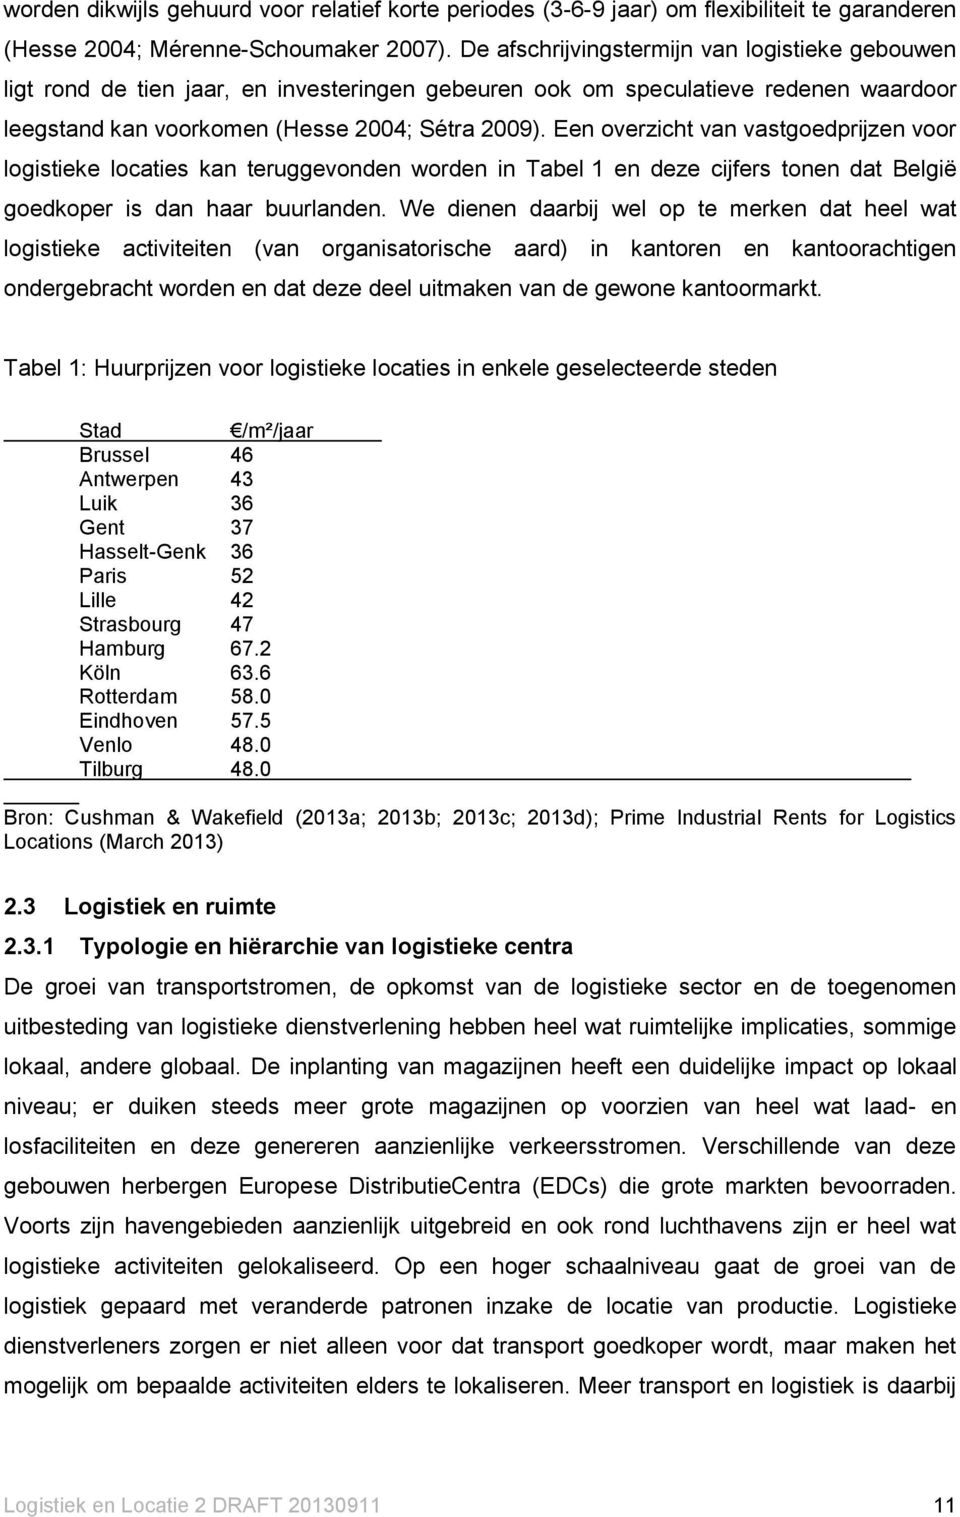 Een overzicht van vastgoedprijzen voor logistieke locaties kan teruggevonden worden in Tabel 1 en deze cijfers tonen dat België goedkoper is dan haar buurlanden.